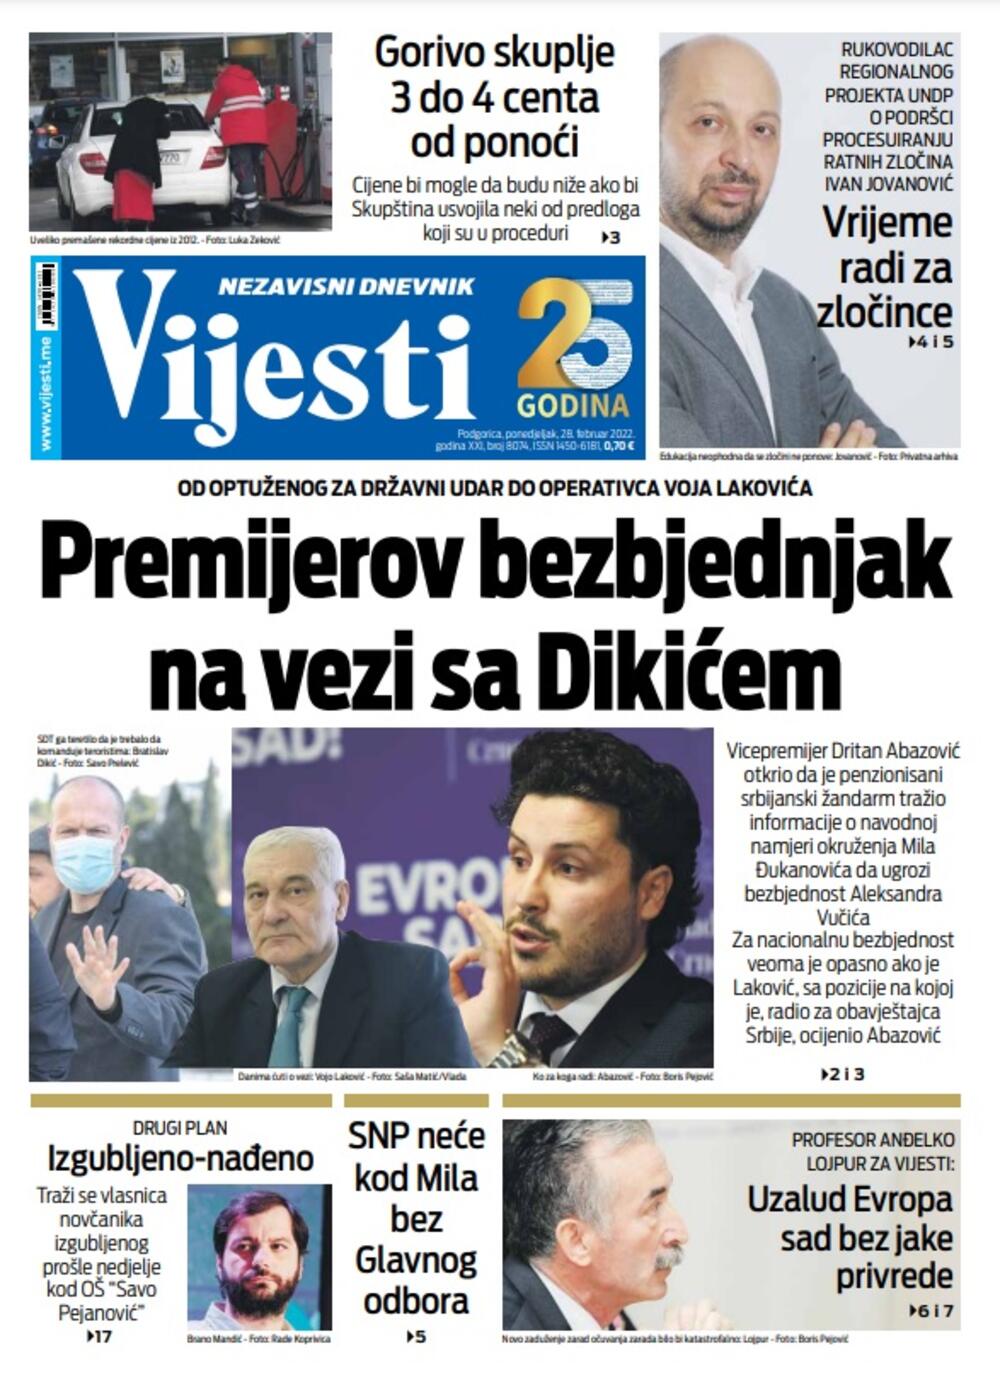 Naslovna strana "Vijesti" za 28. februar 2022., Foto: Vijesti